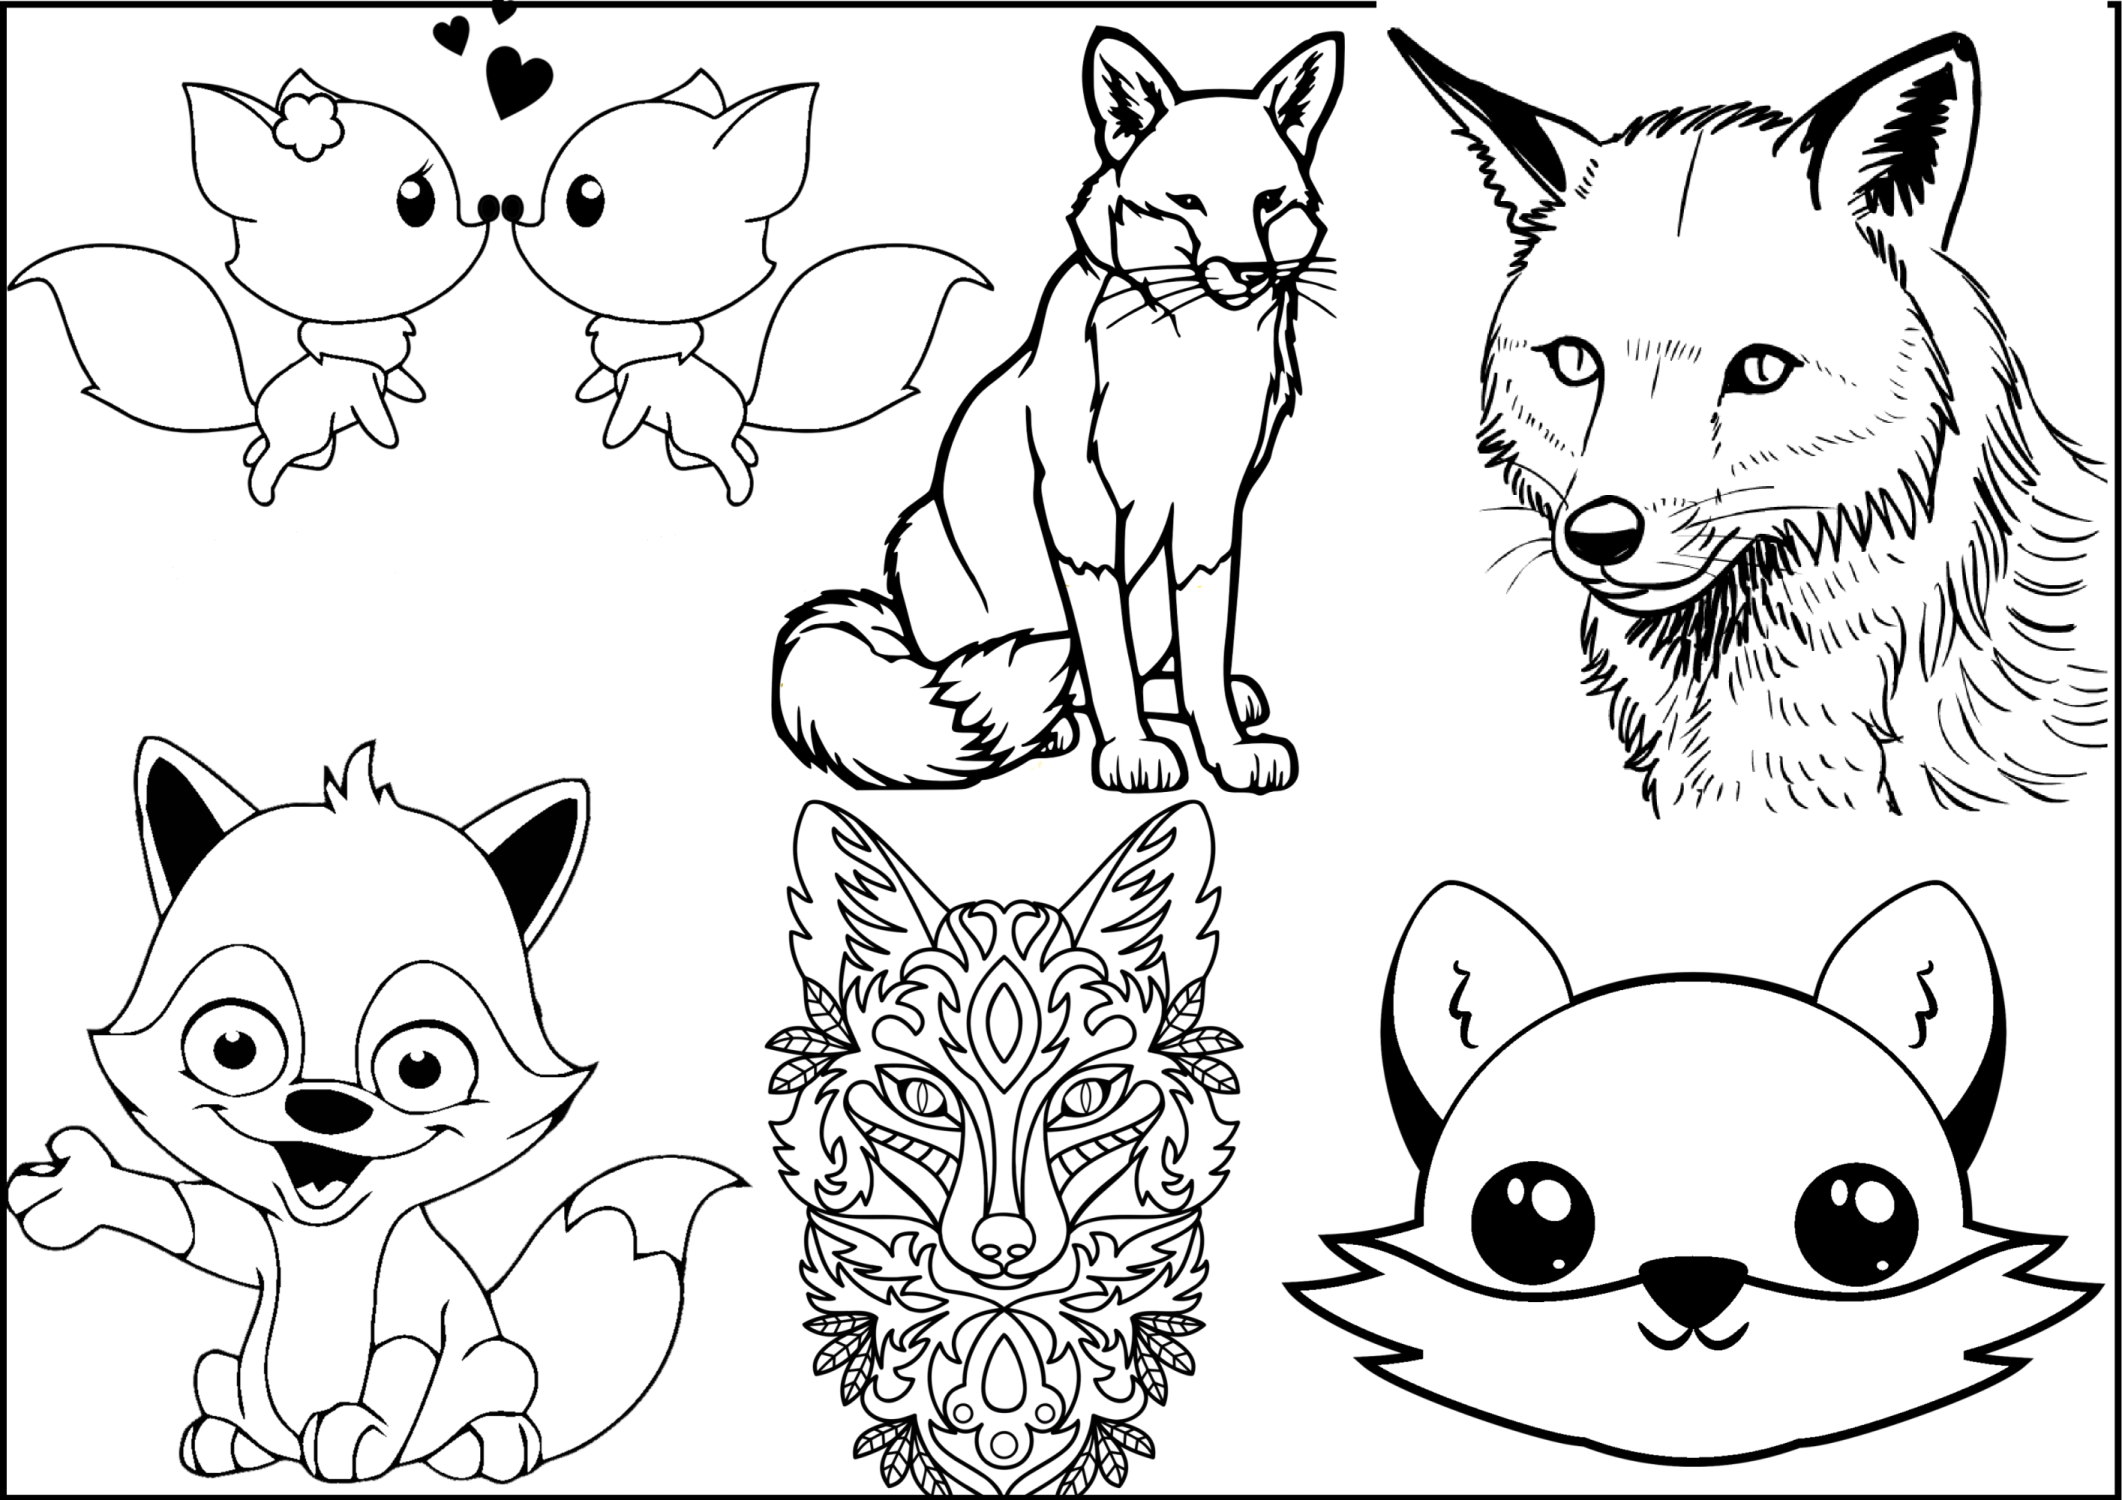 Divertenti disegni di volpi da colorare per bambini - GBcolorare